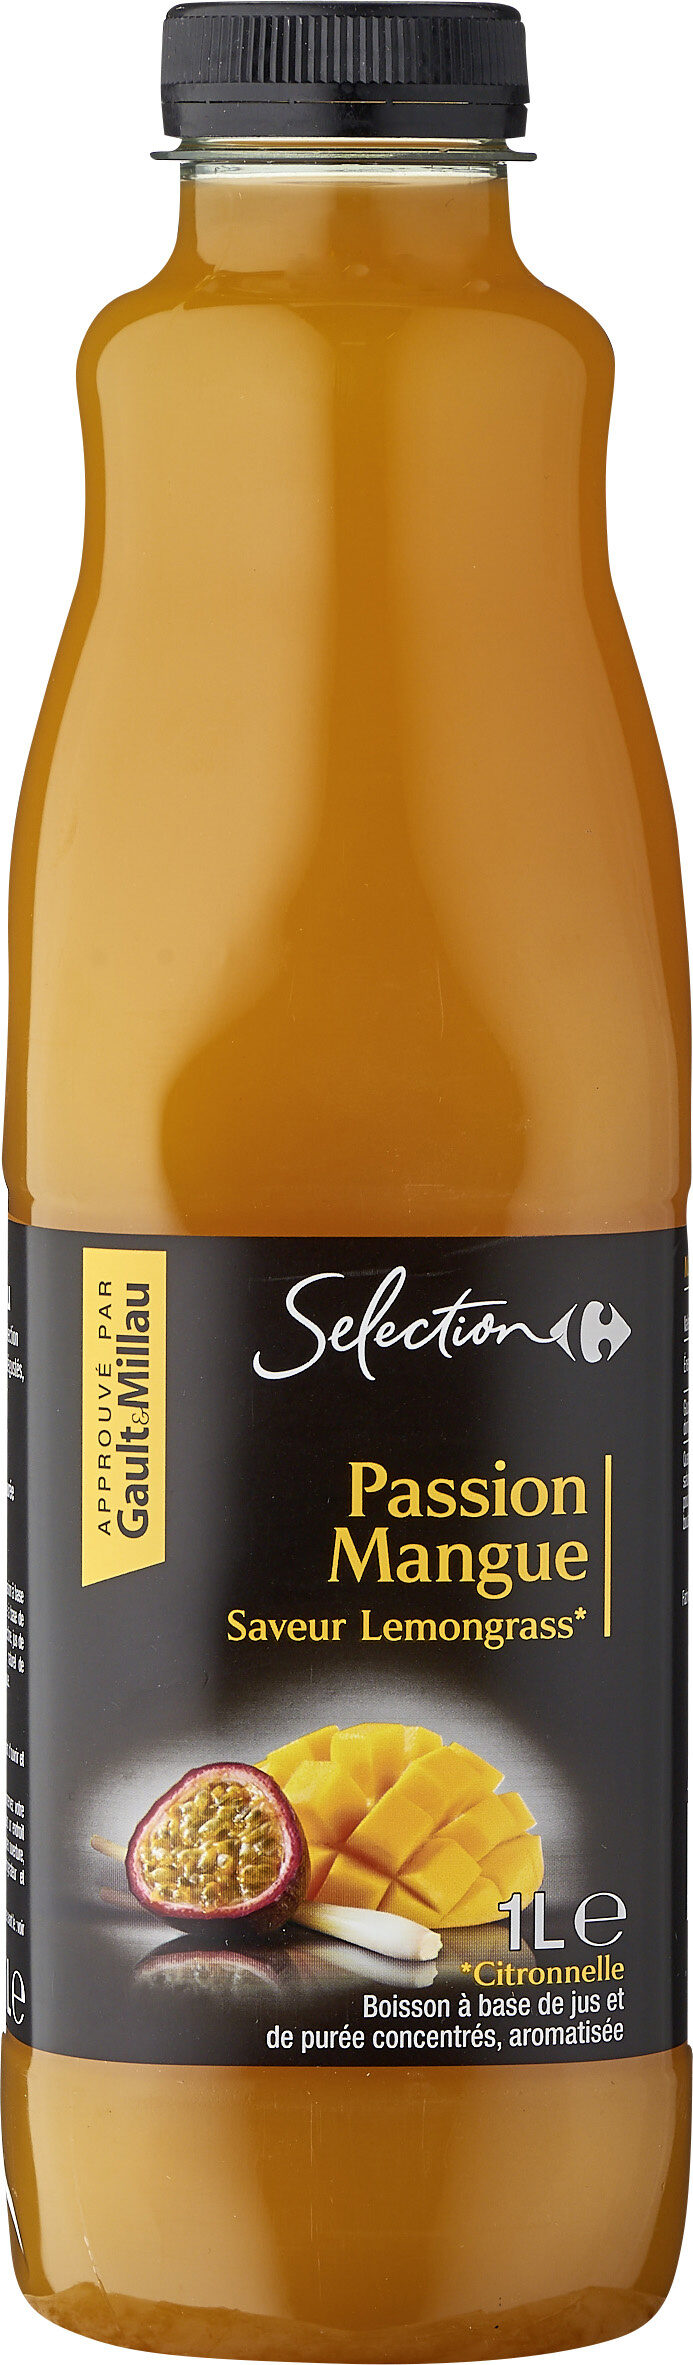 Passion Mangue Saveur Citronnelle - Product - fr